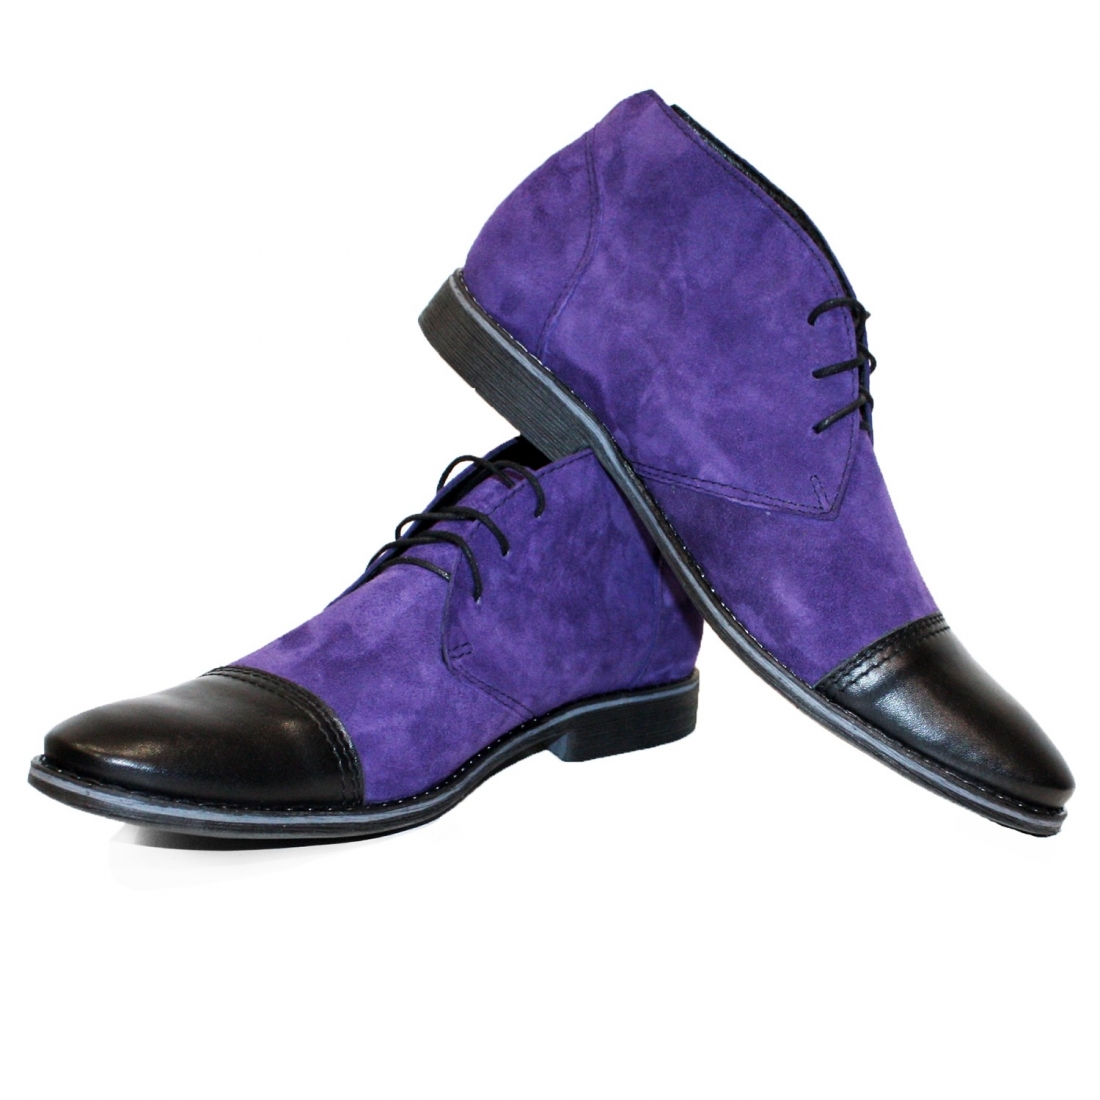 Modello Vilgero - Buty Chukka - Handmade Colorful Italian Leather Shoes